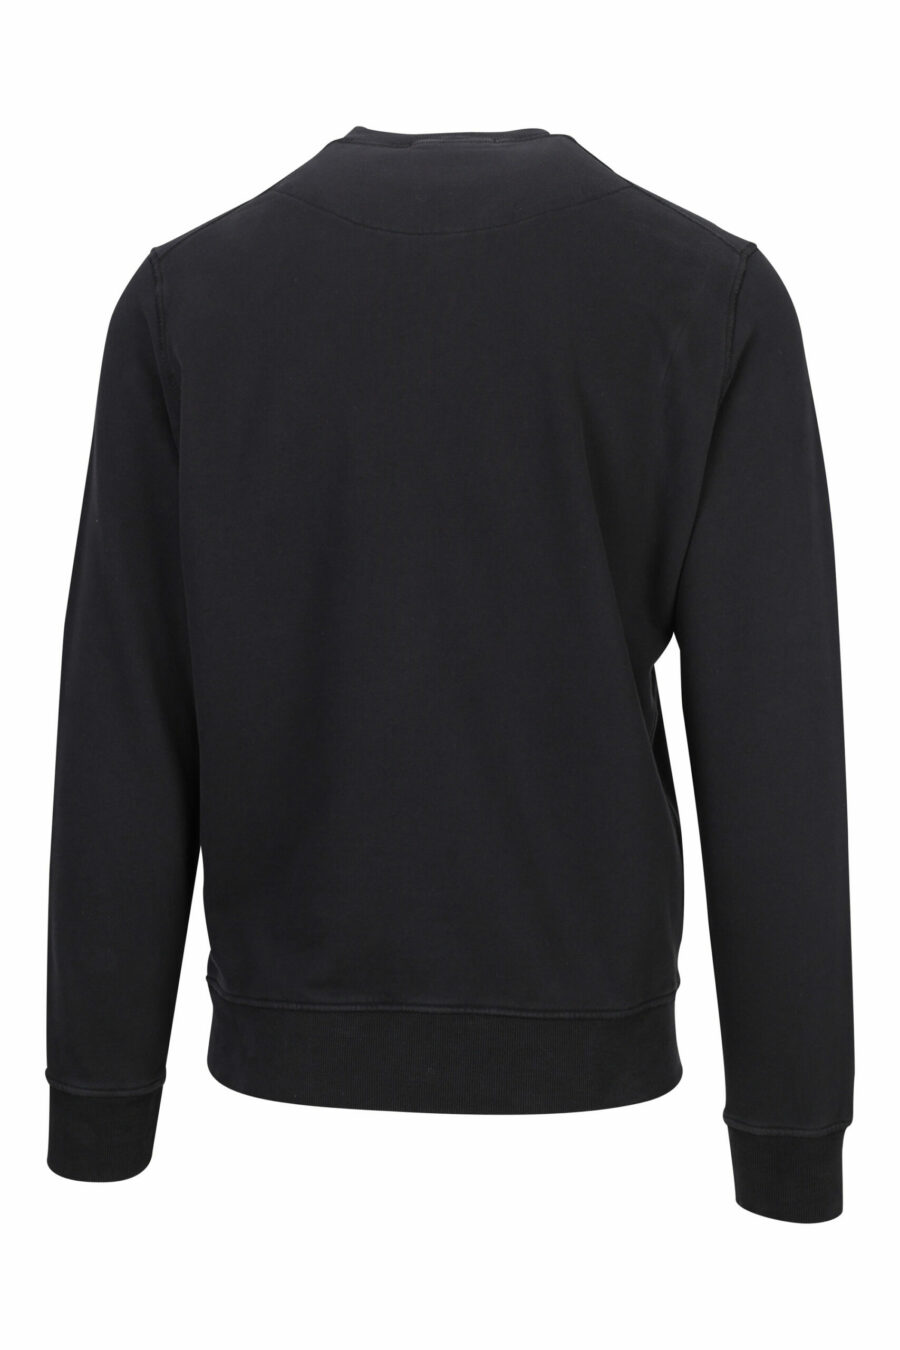 Schwarzes Sweatshirt mit rundem Maxilogo - 8052572740039 1 skaliert